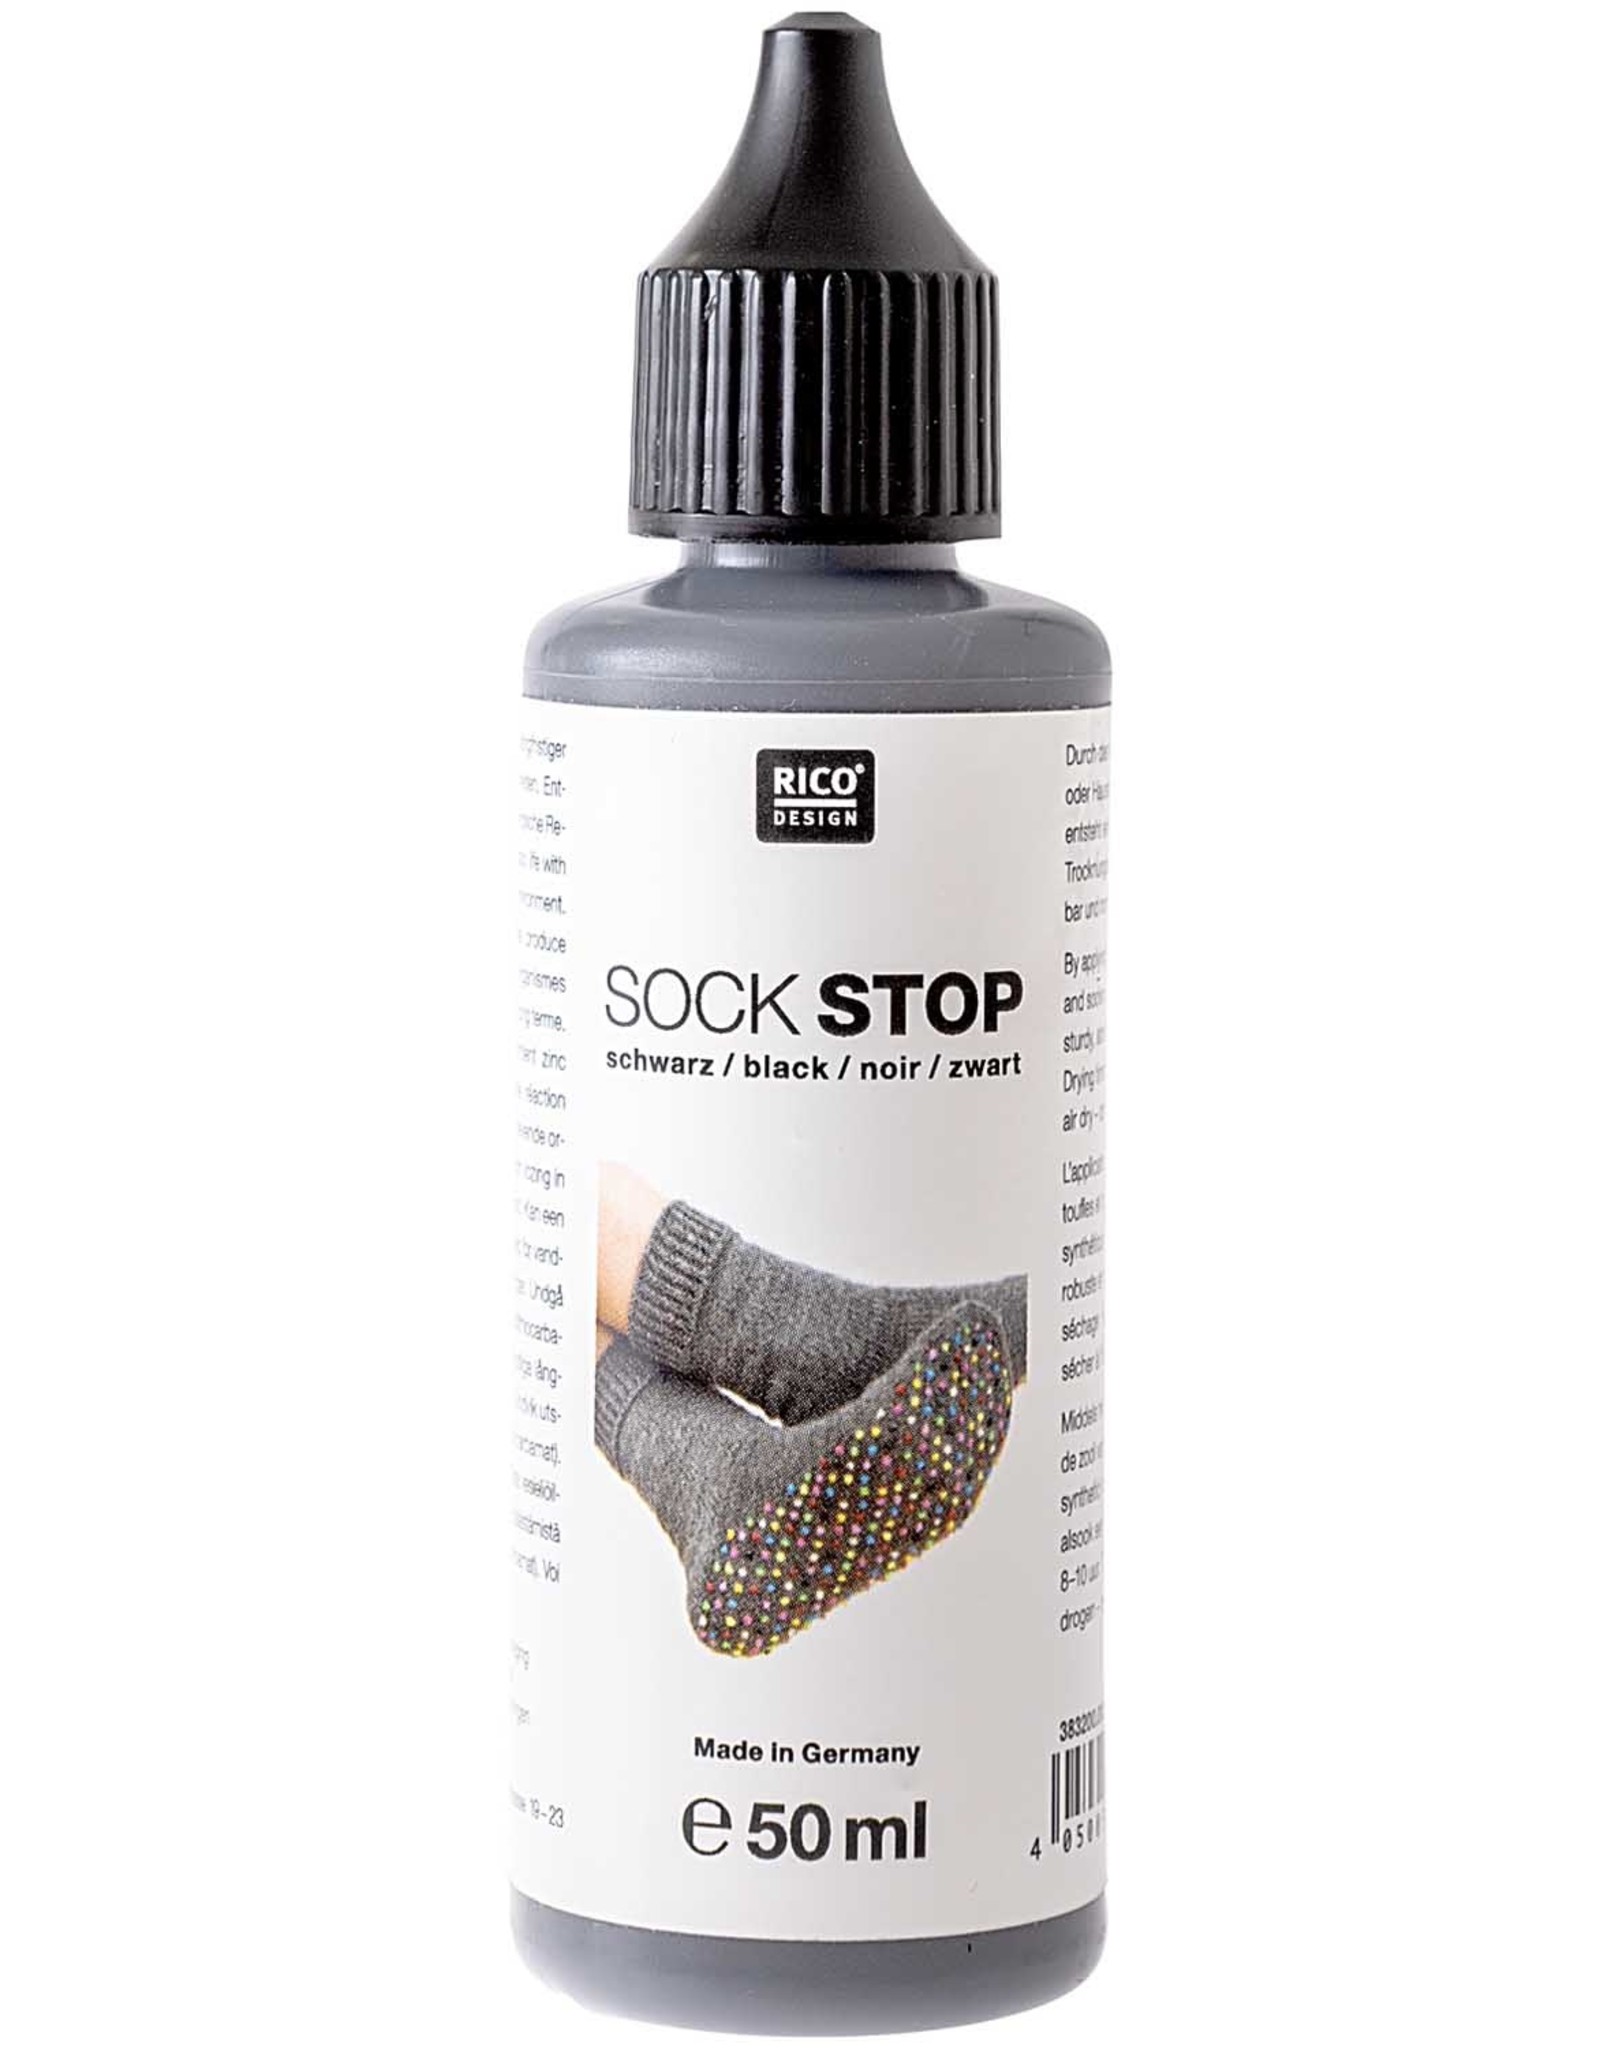 Sock stop black